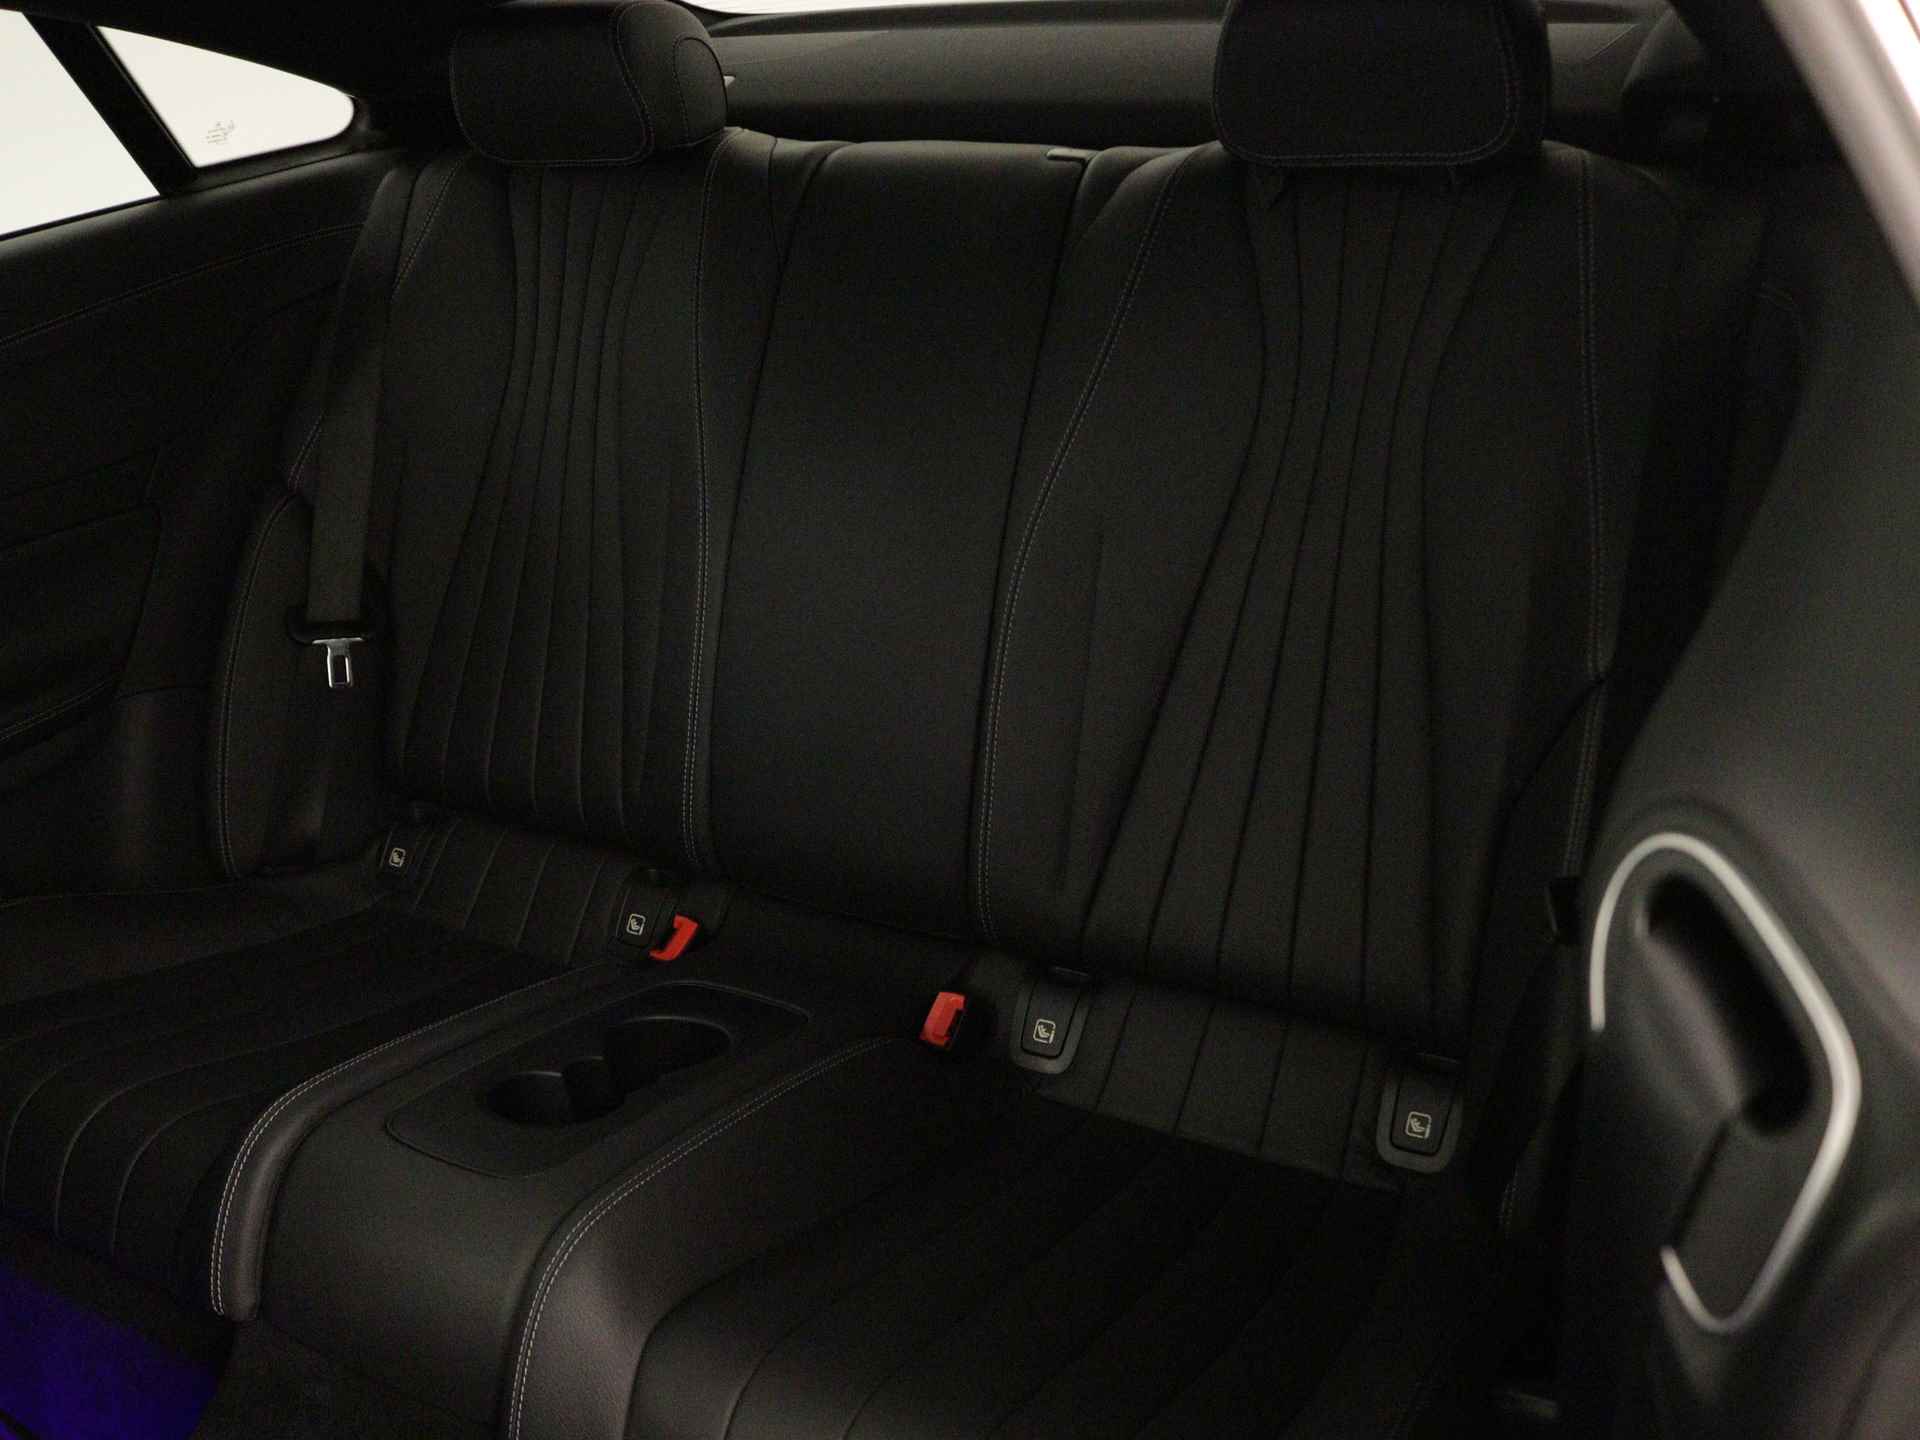 Mercedes-Benz E-Klasse 200 AMG Line | Multi spaaks lichtmetalen velgen | Panoramadak | Burmester | Memory Seats | 360 Camera | Navigatie | wide screen | Inclusief 24 maanden Mercedes-Benz Certified garantie voor Europa. - 22/45